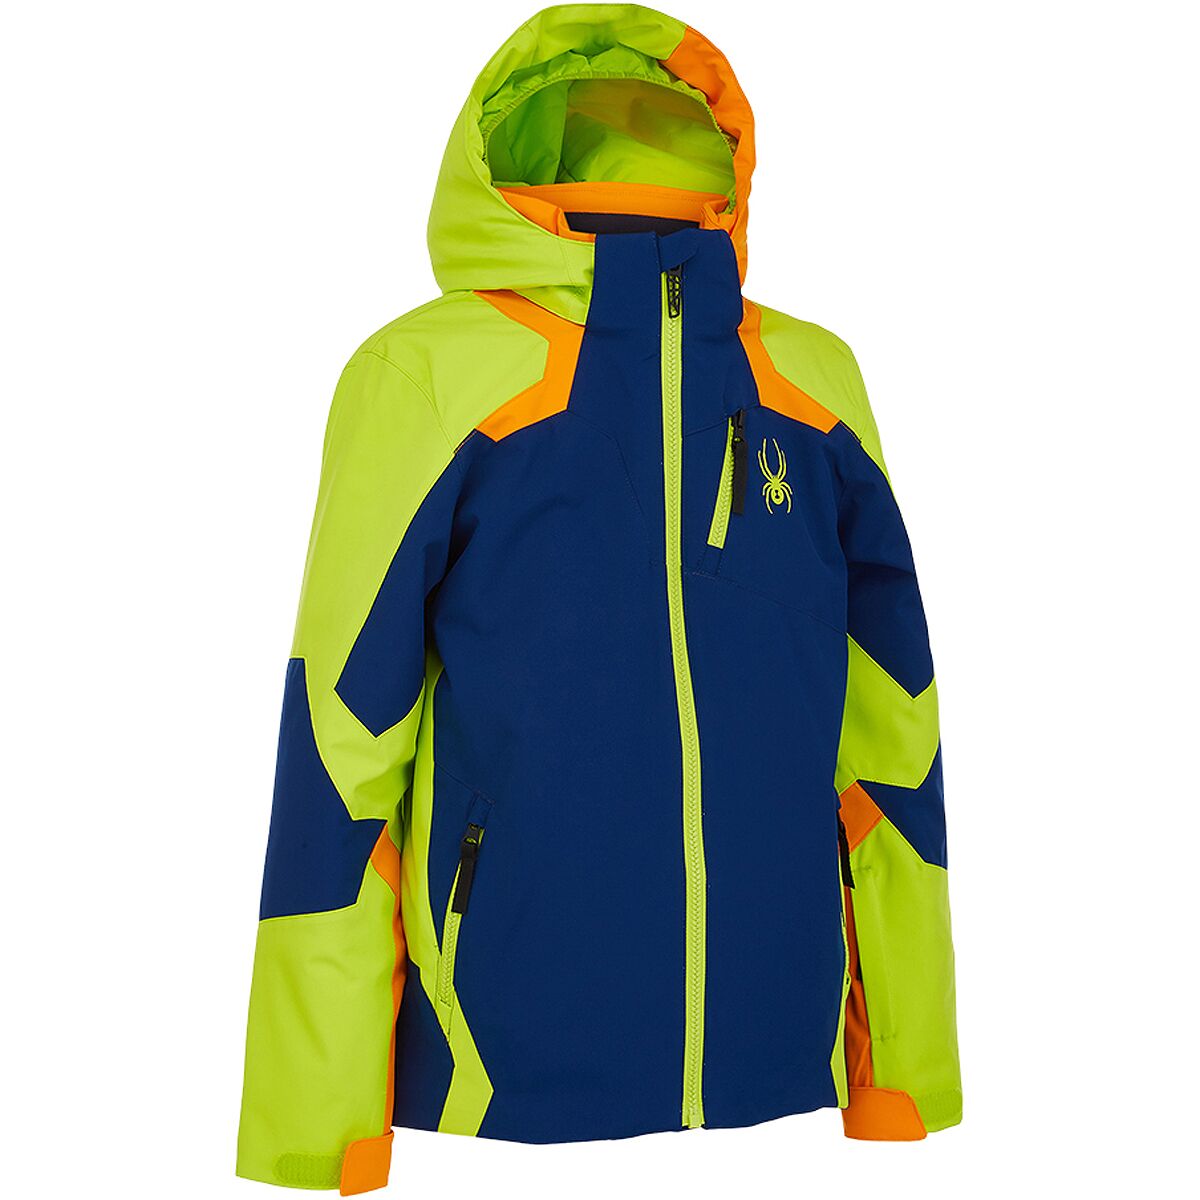 NEW Boys' Spyder Leader Ski Jacket JUST £109.00 Black 